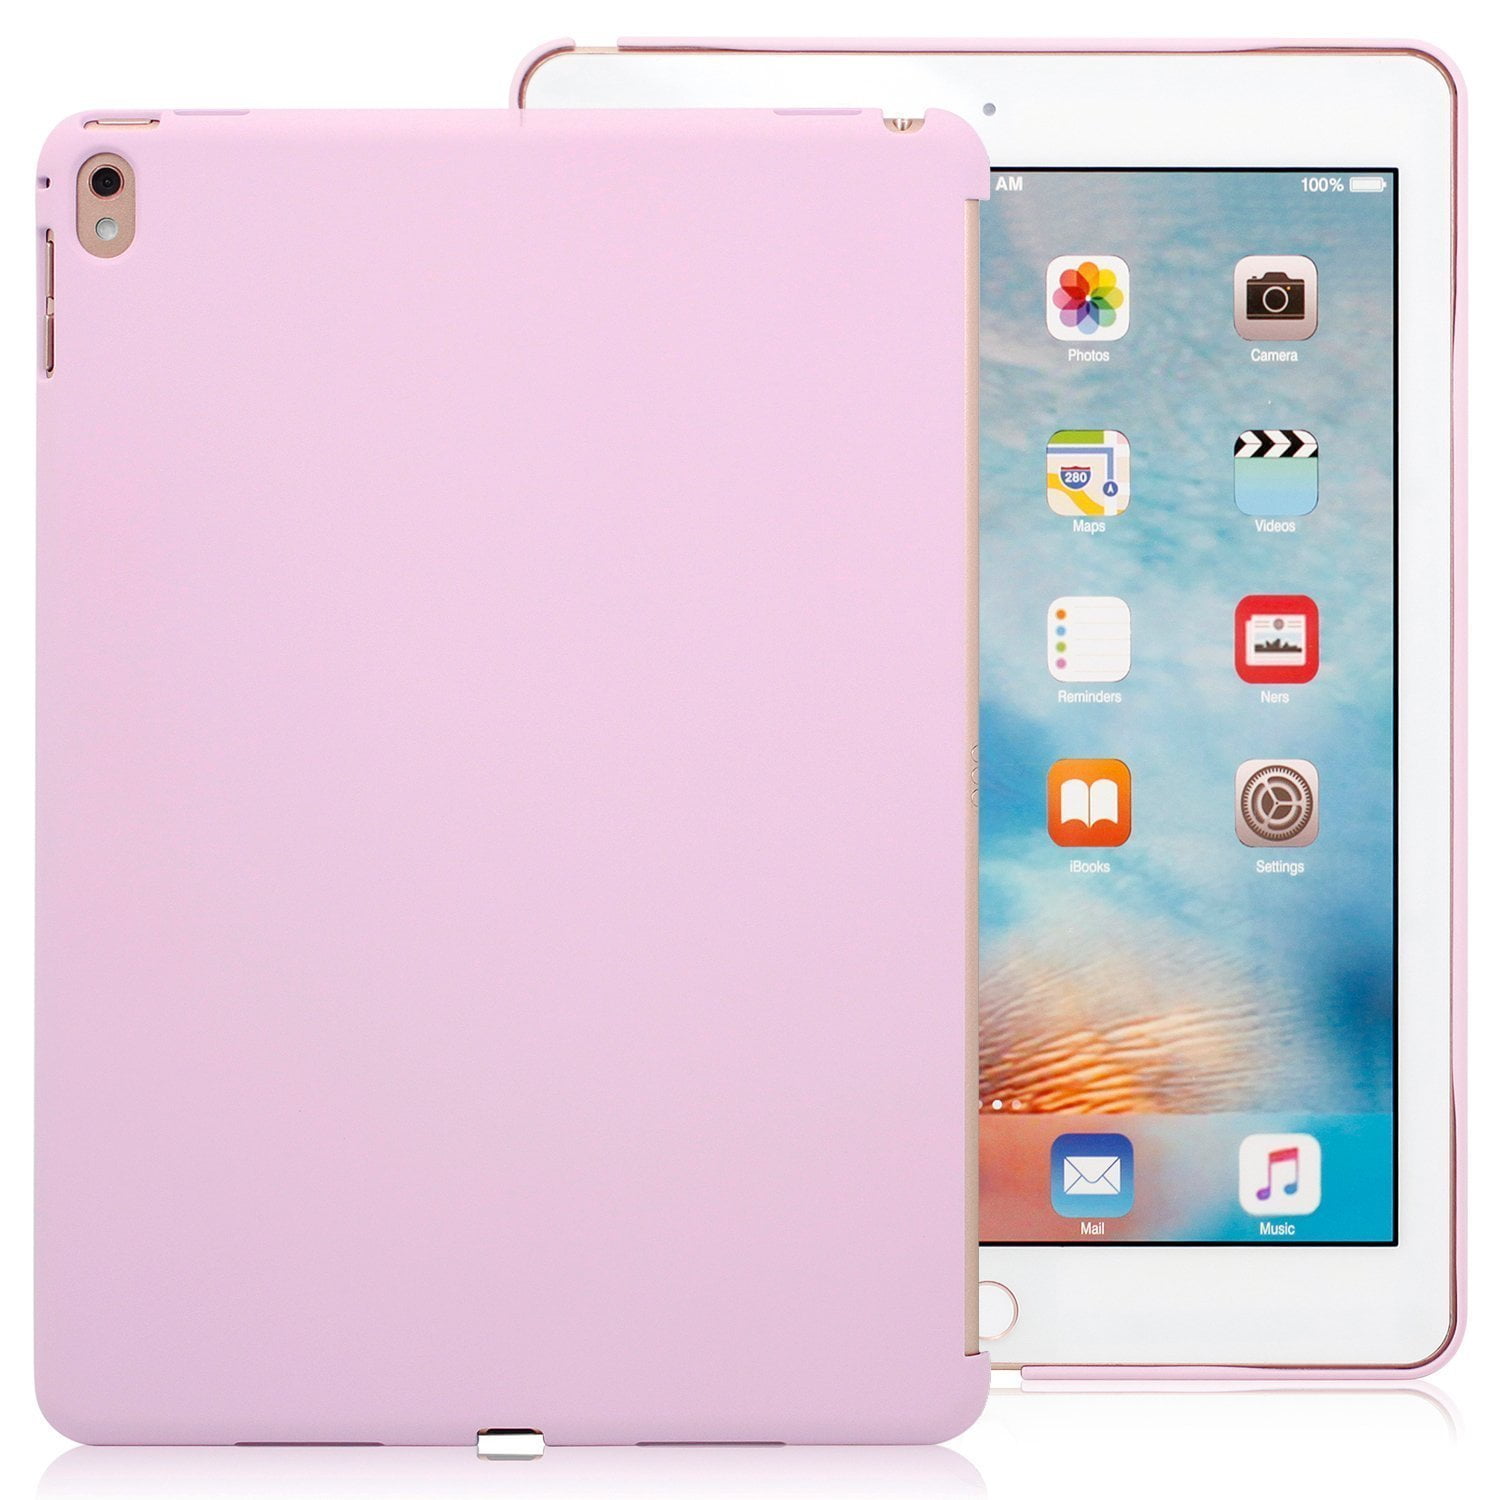 iPad Pro 9.7 Inch Lavender Cover   Companion Case   Perfect match